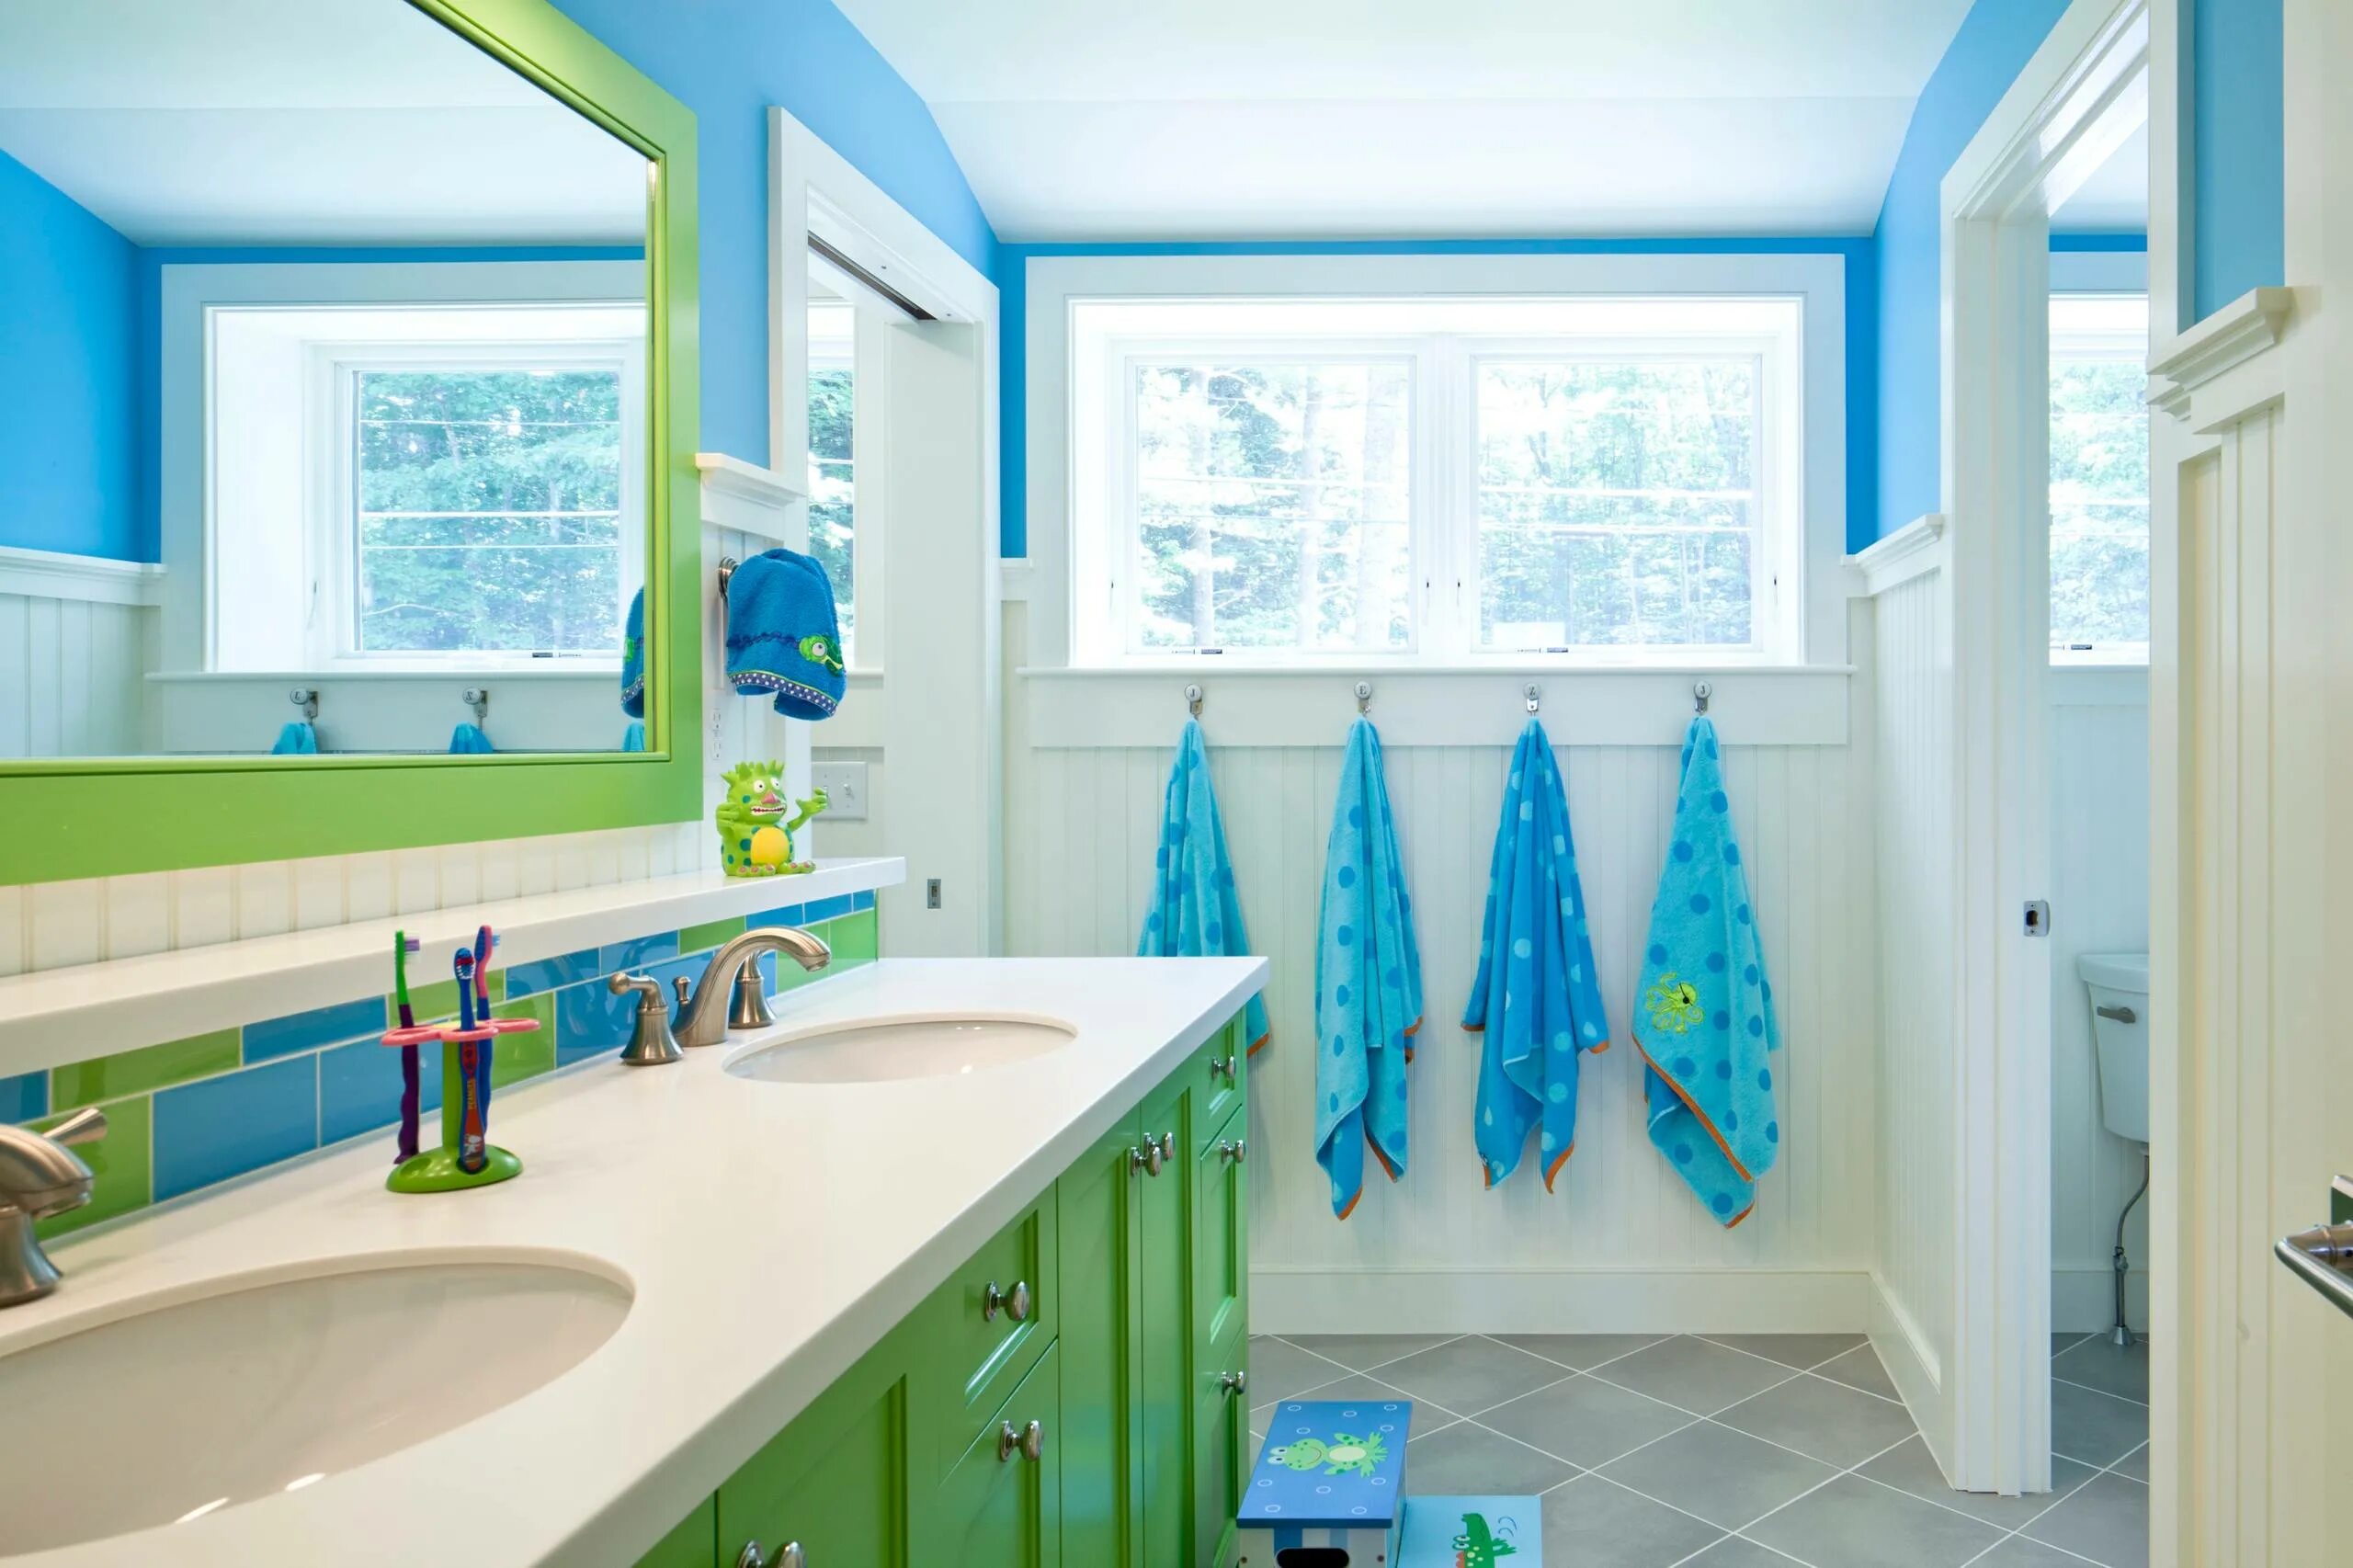 Ребенок в ванной комнате. Яркий интерьер ванной комнаты. Детская ванная. Ванная в морском стиле. Ванная в синих тонах.